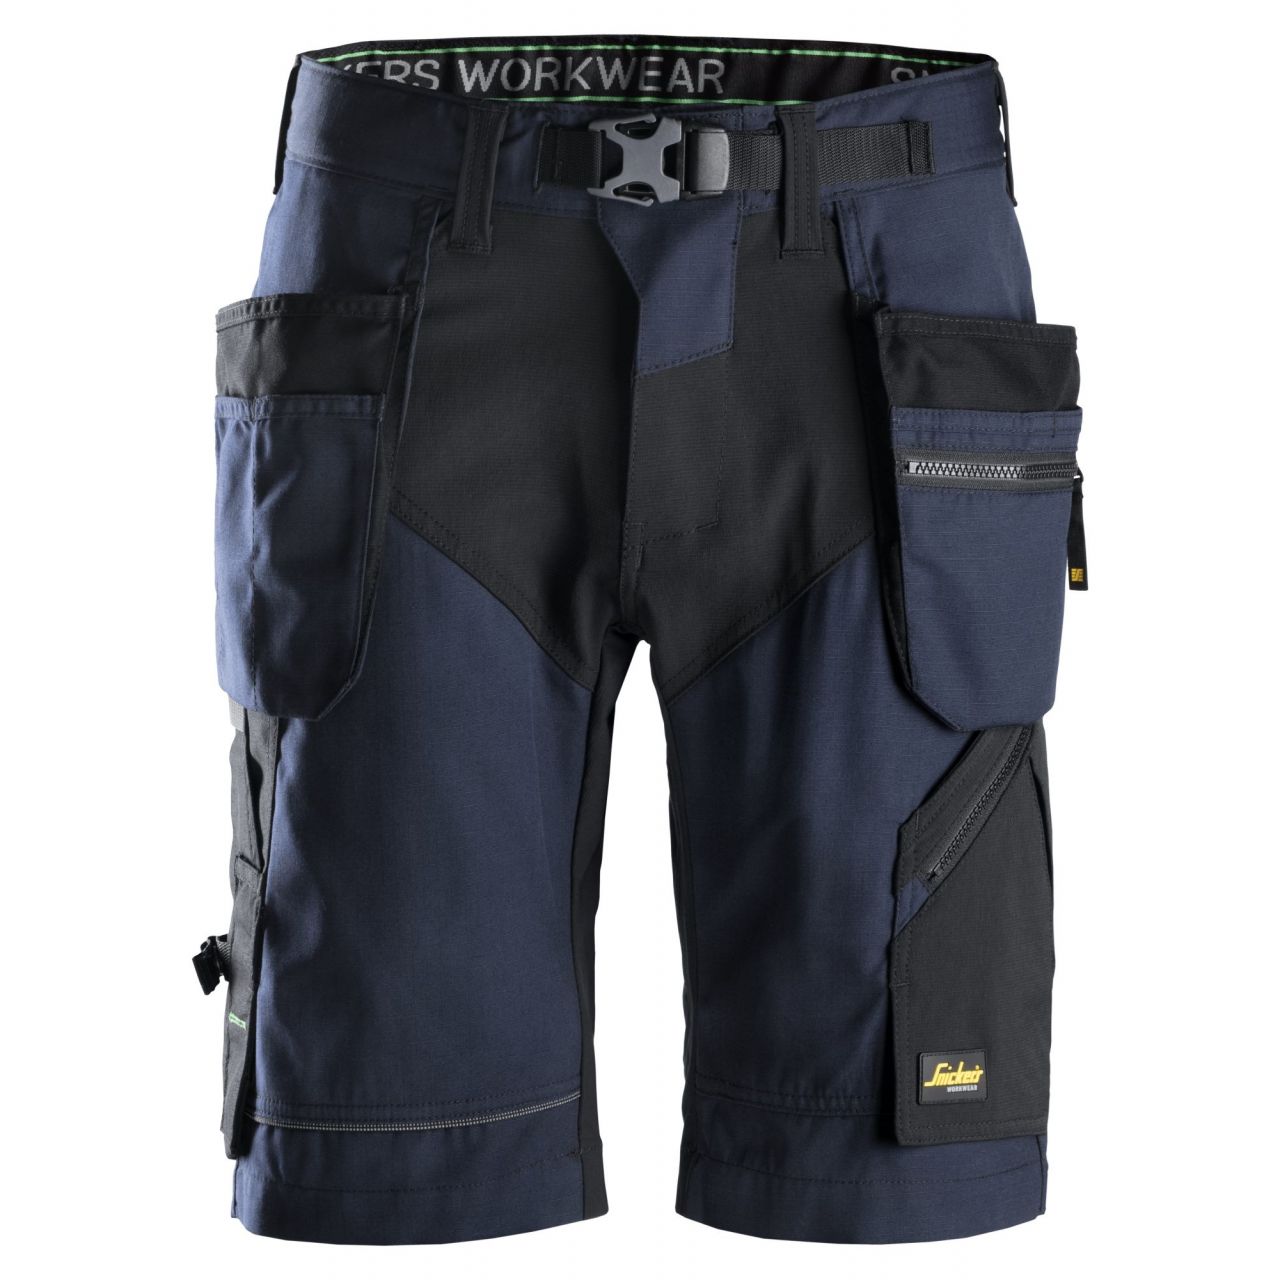 6904 Pantalón corto FlexiWork+ con bolsillos flotantes azul marino-negro talla 58